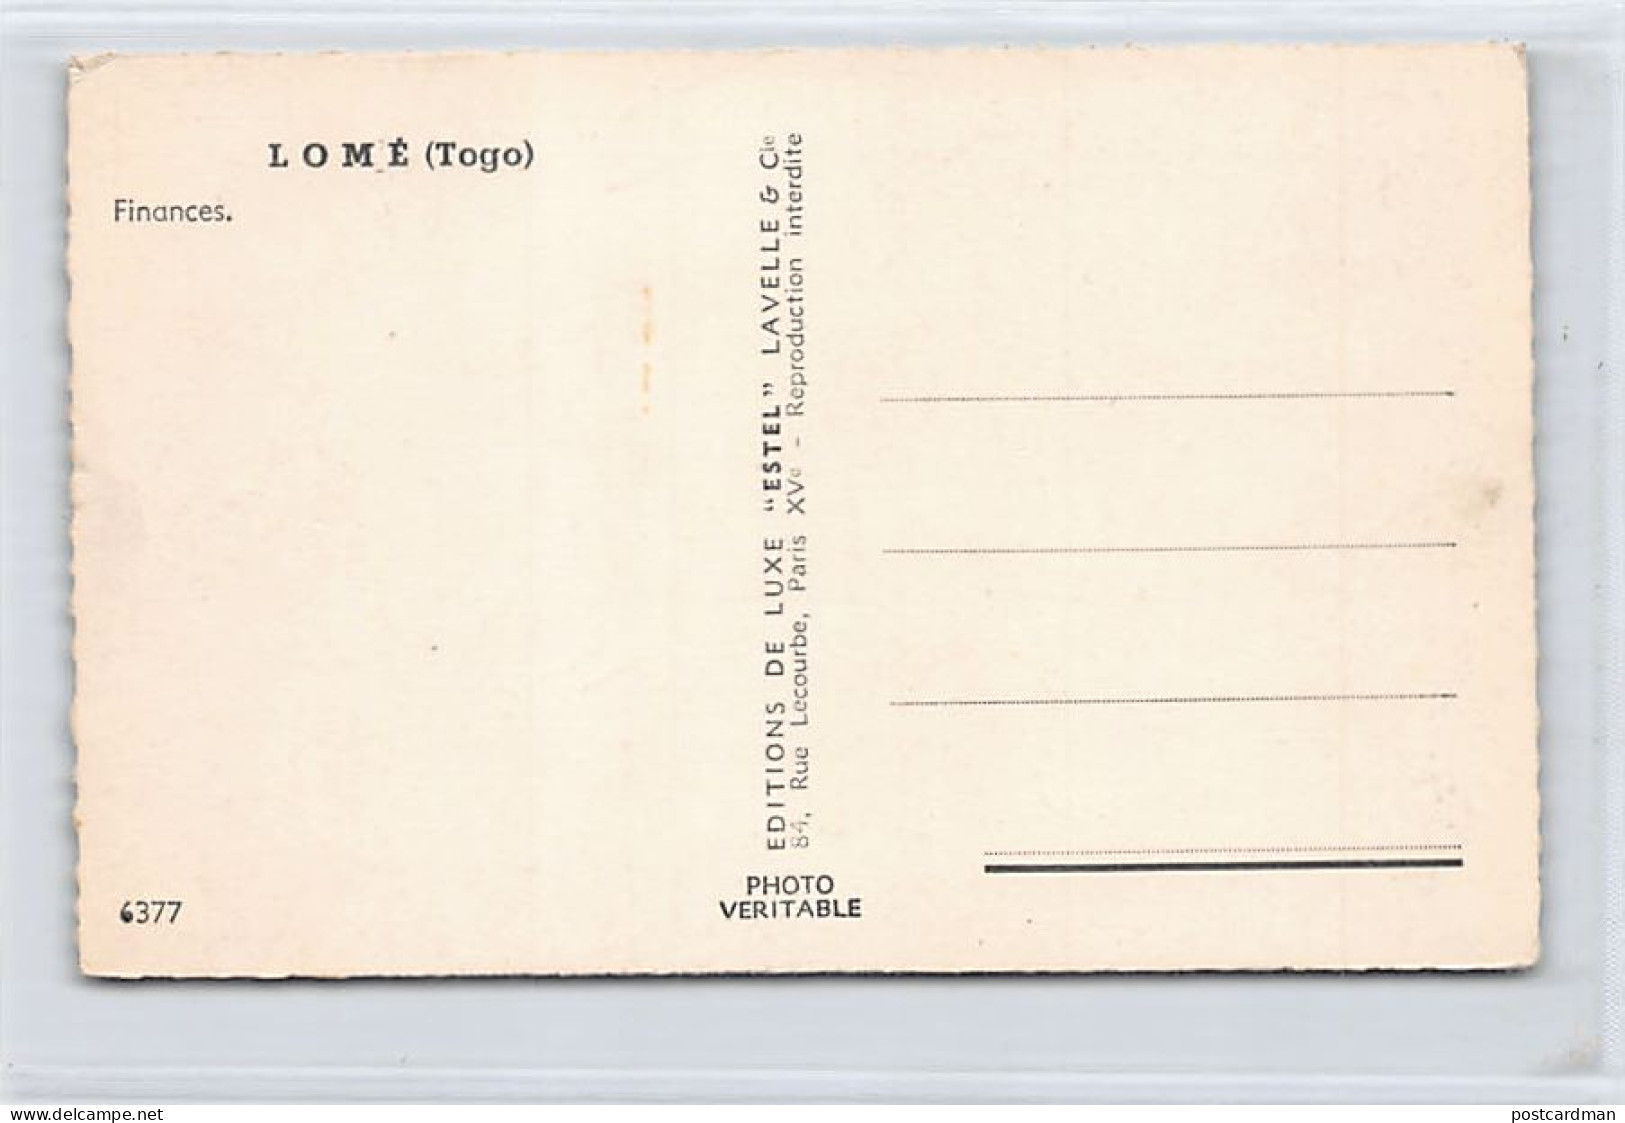 Togo - LOMÉ - Finances - Ed. Lavelle & Cie 6377 - Togo